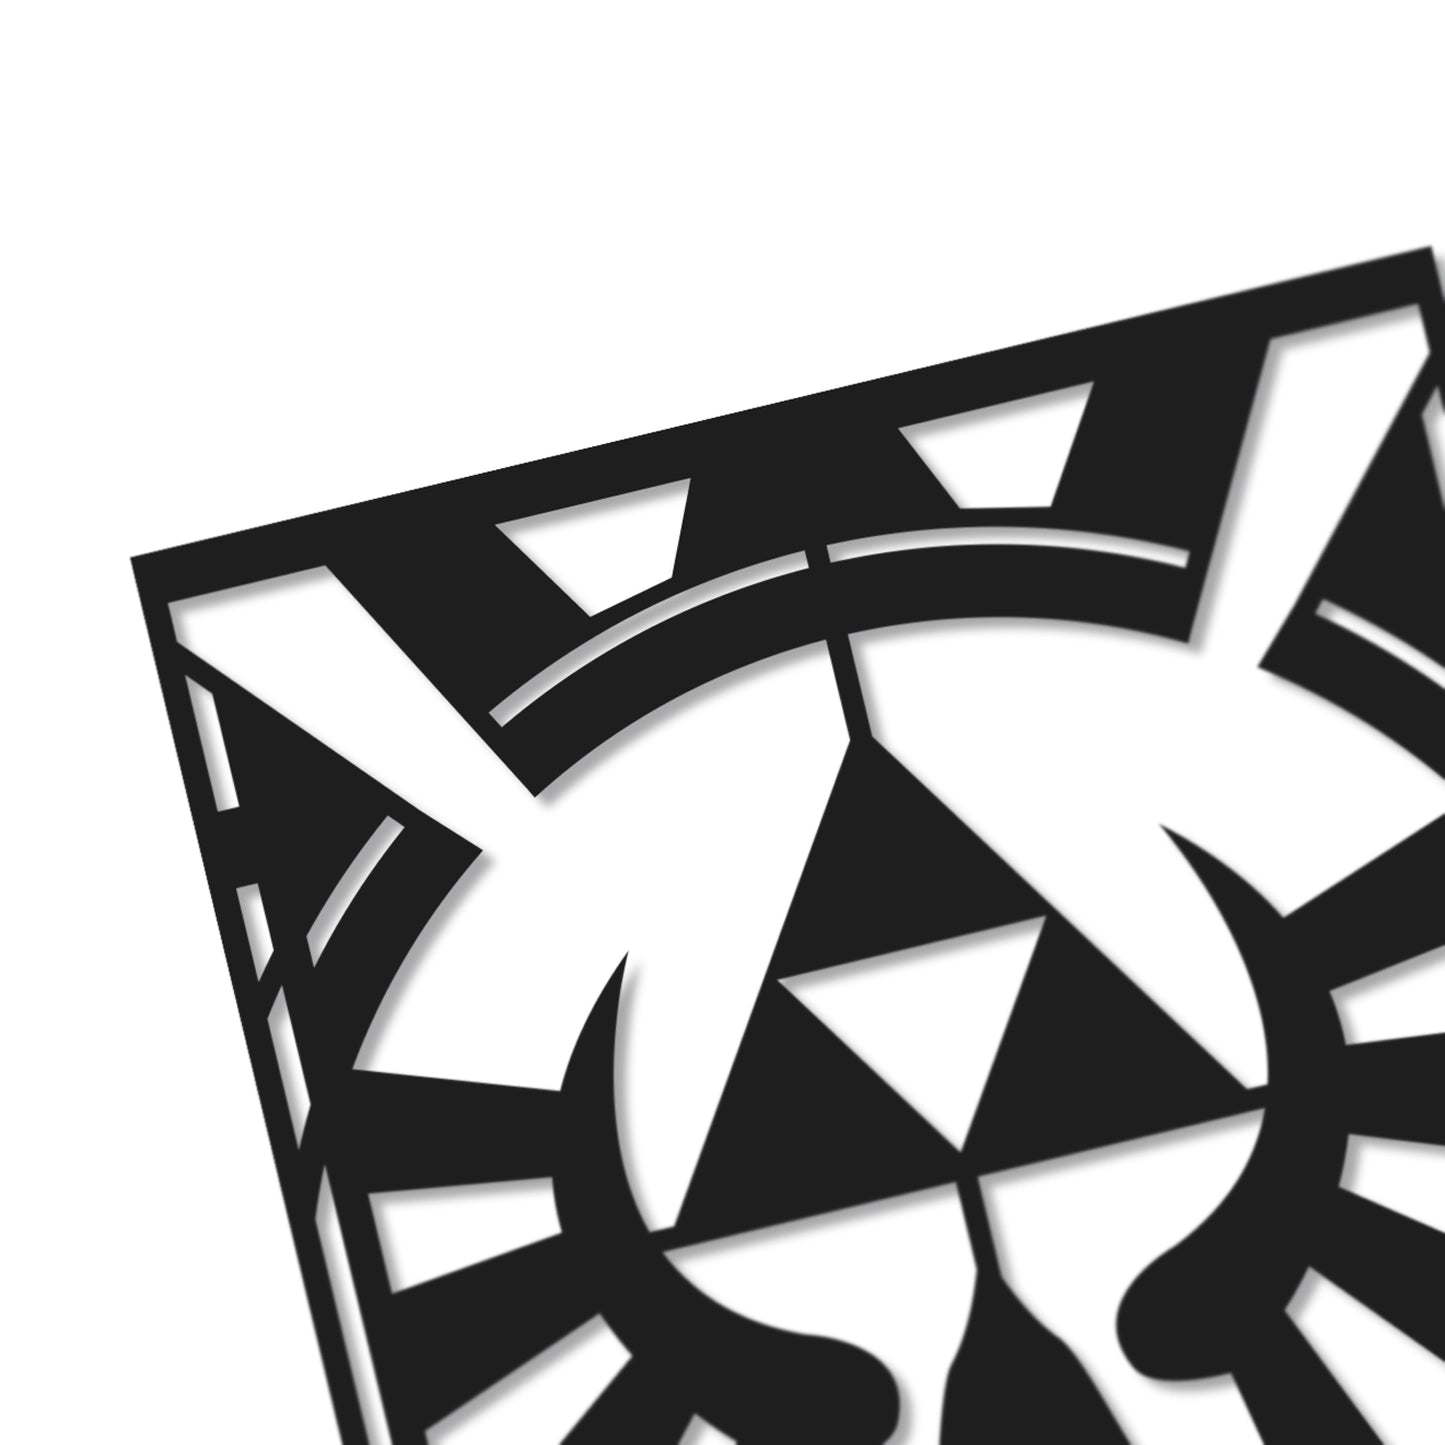 UNFRAMED Zelda - Royal Crest paper cut art